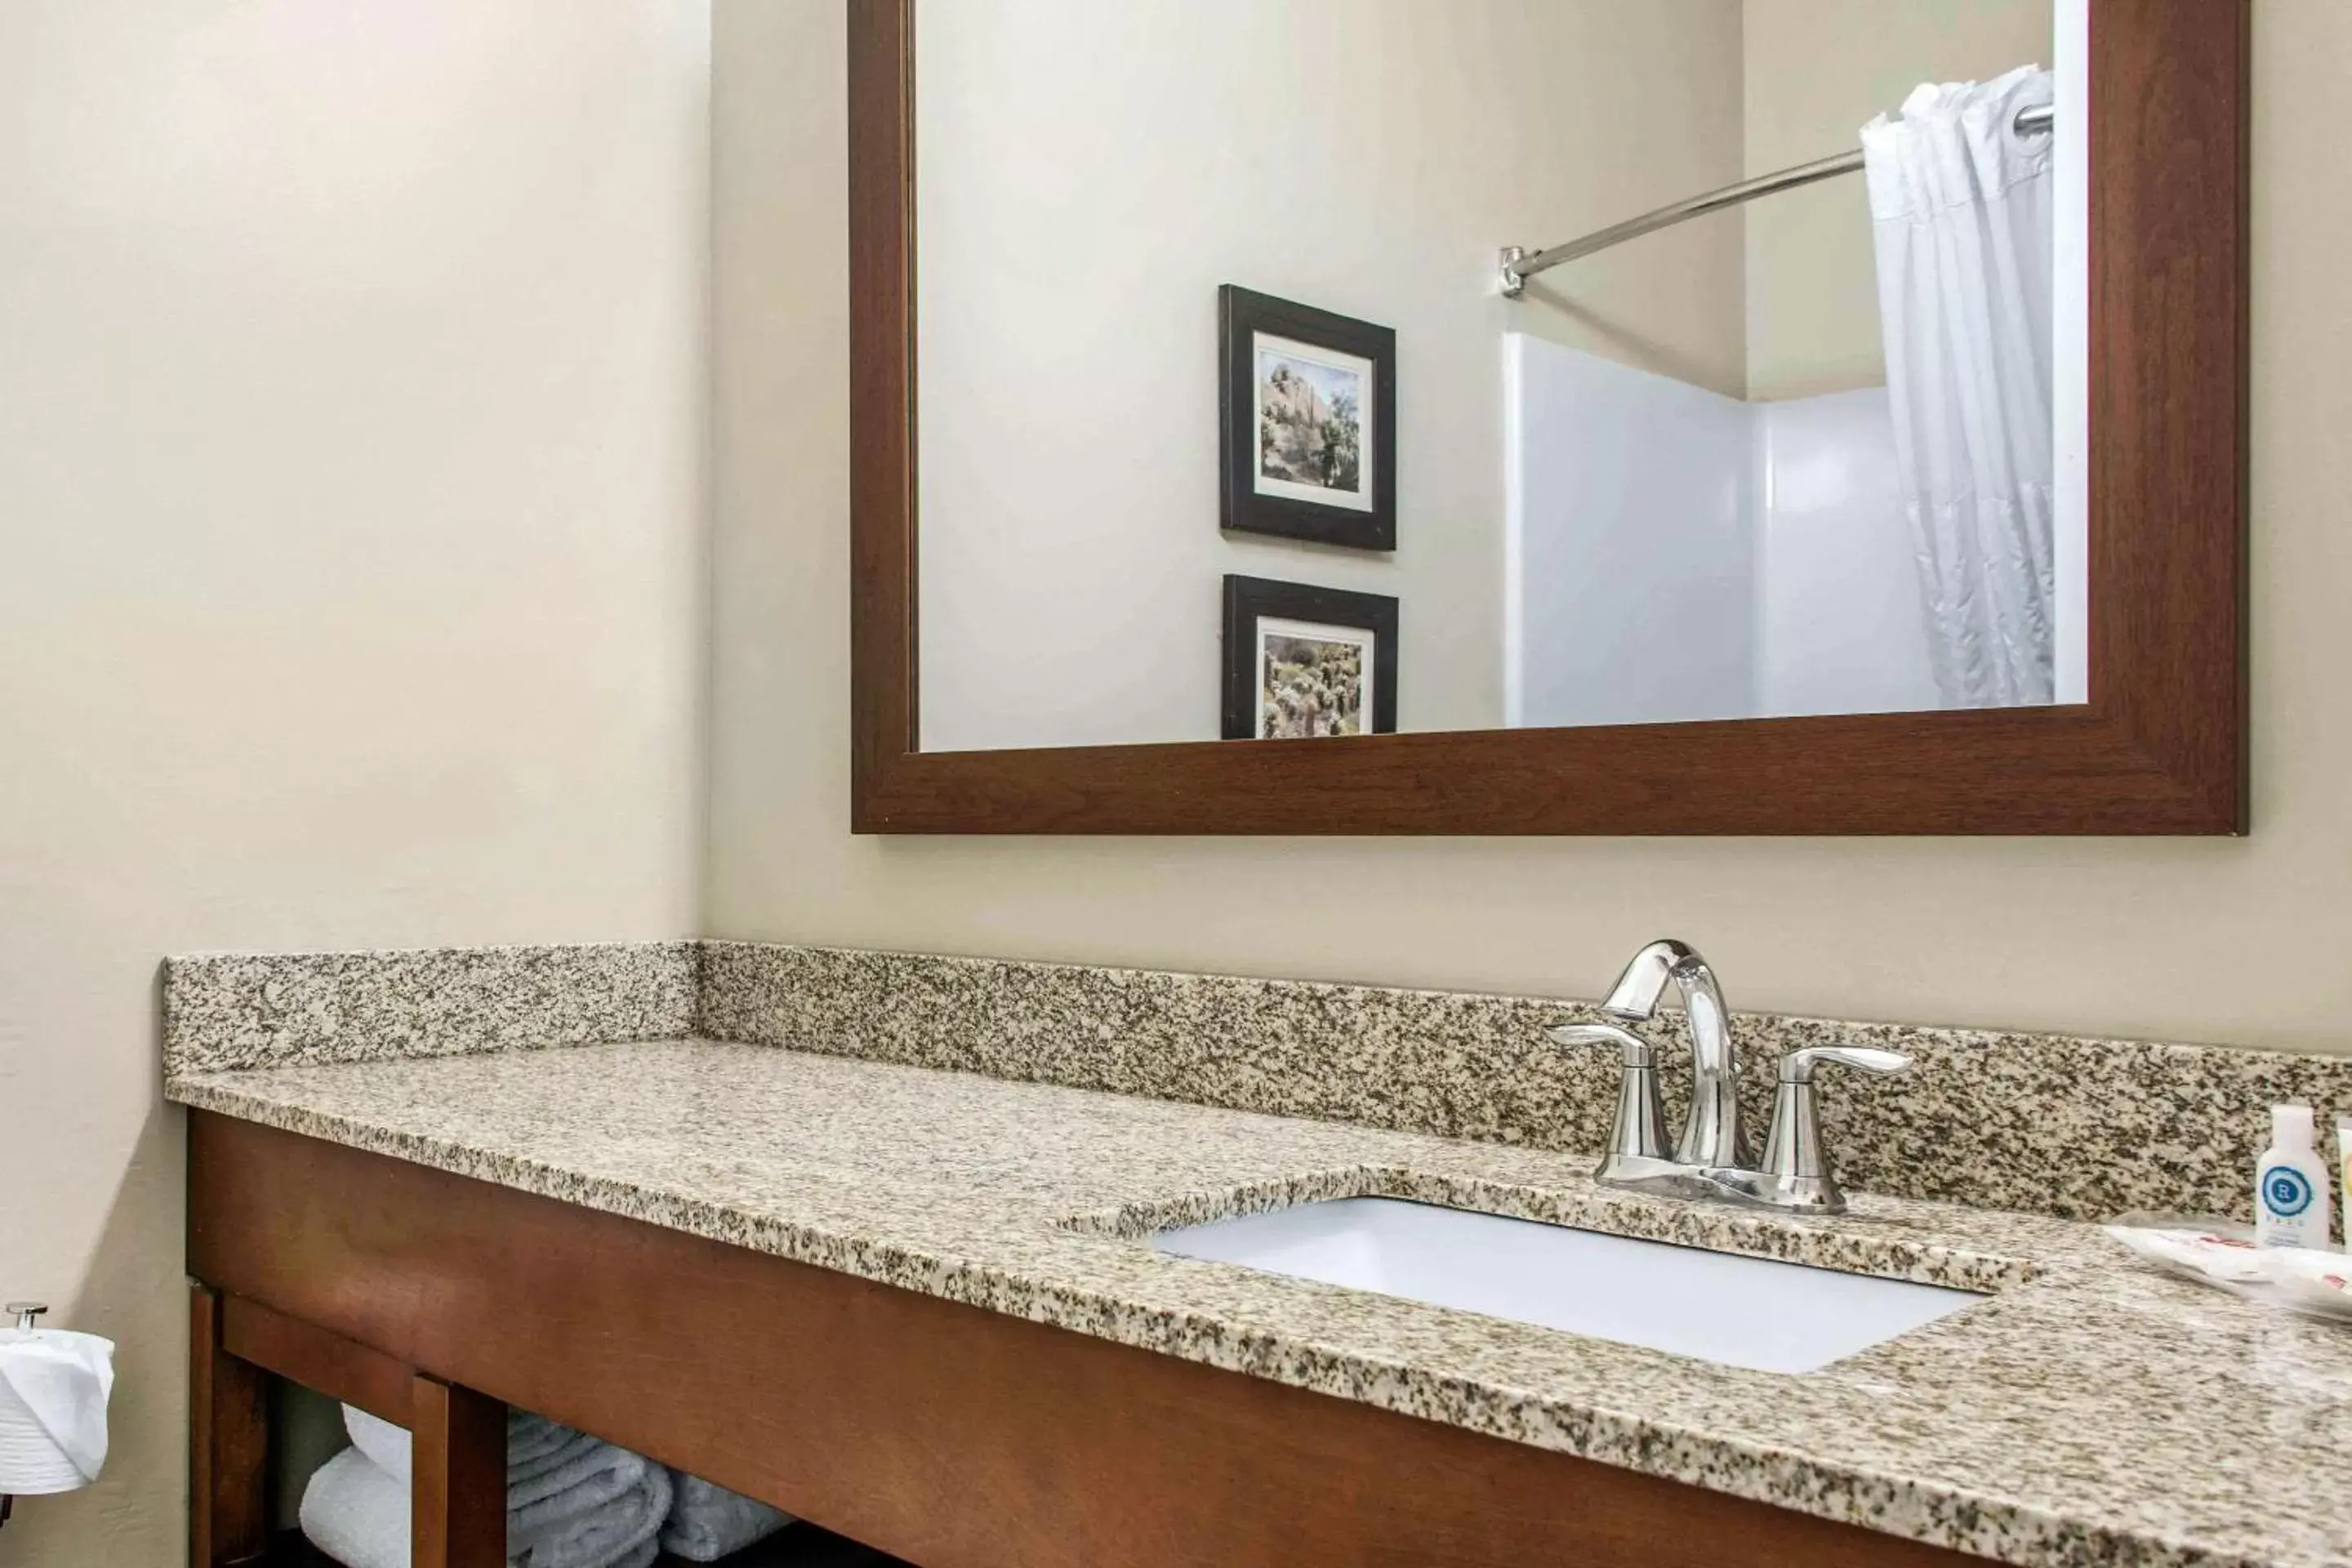 Bathroom in Hotel Scottsdale